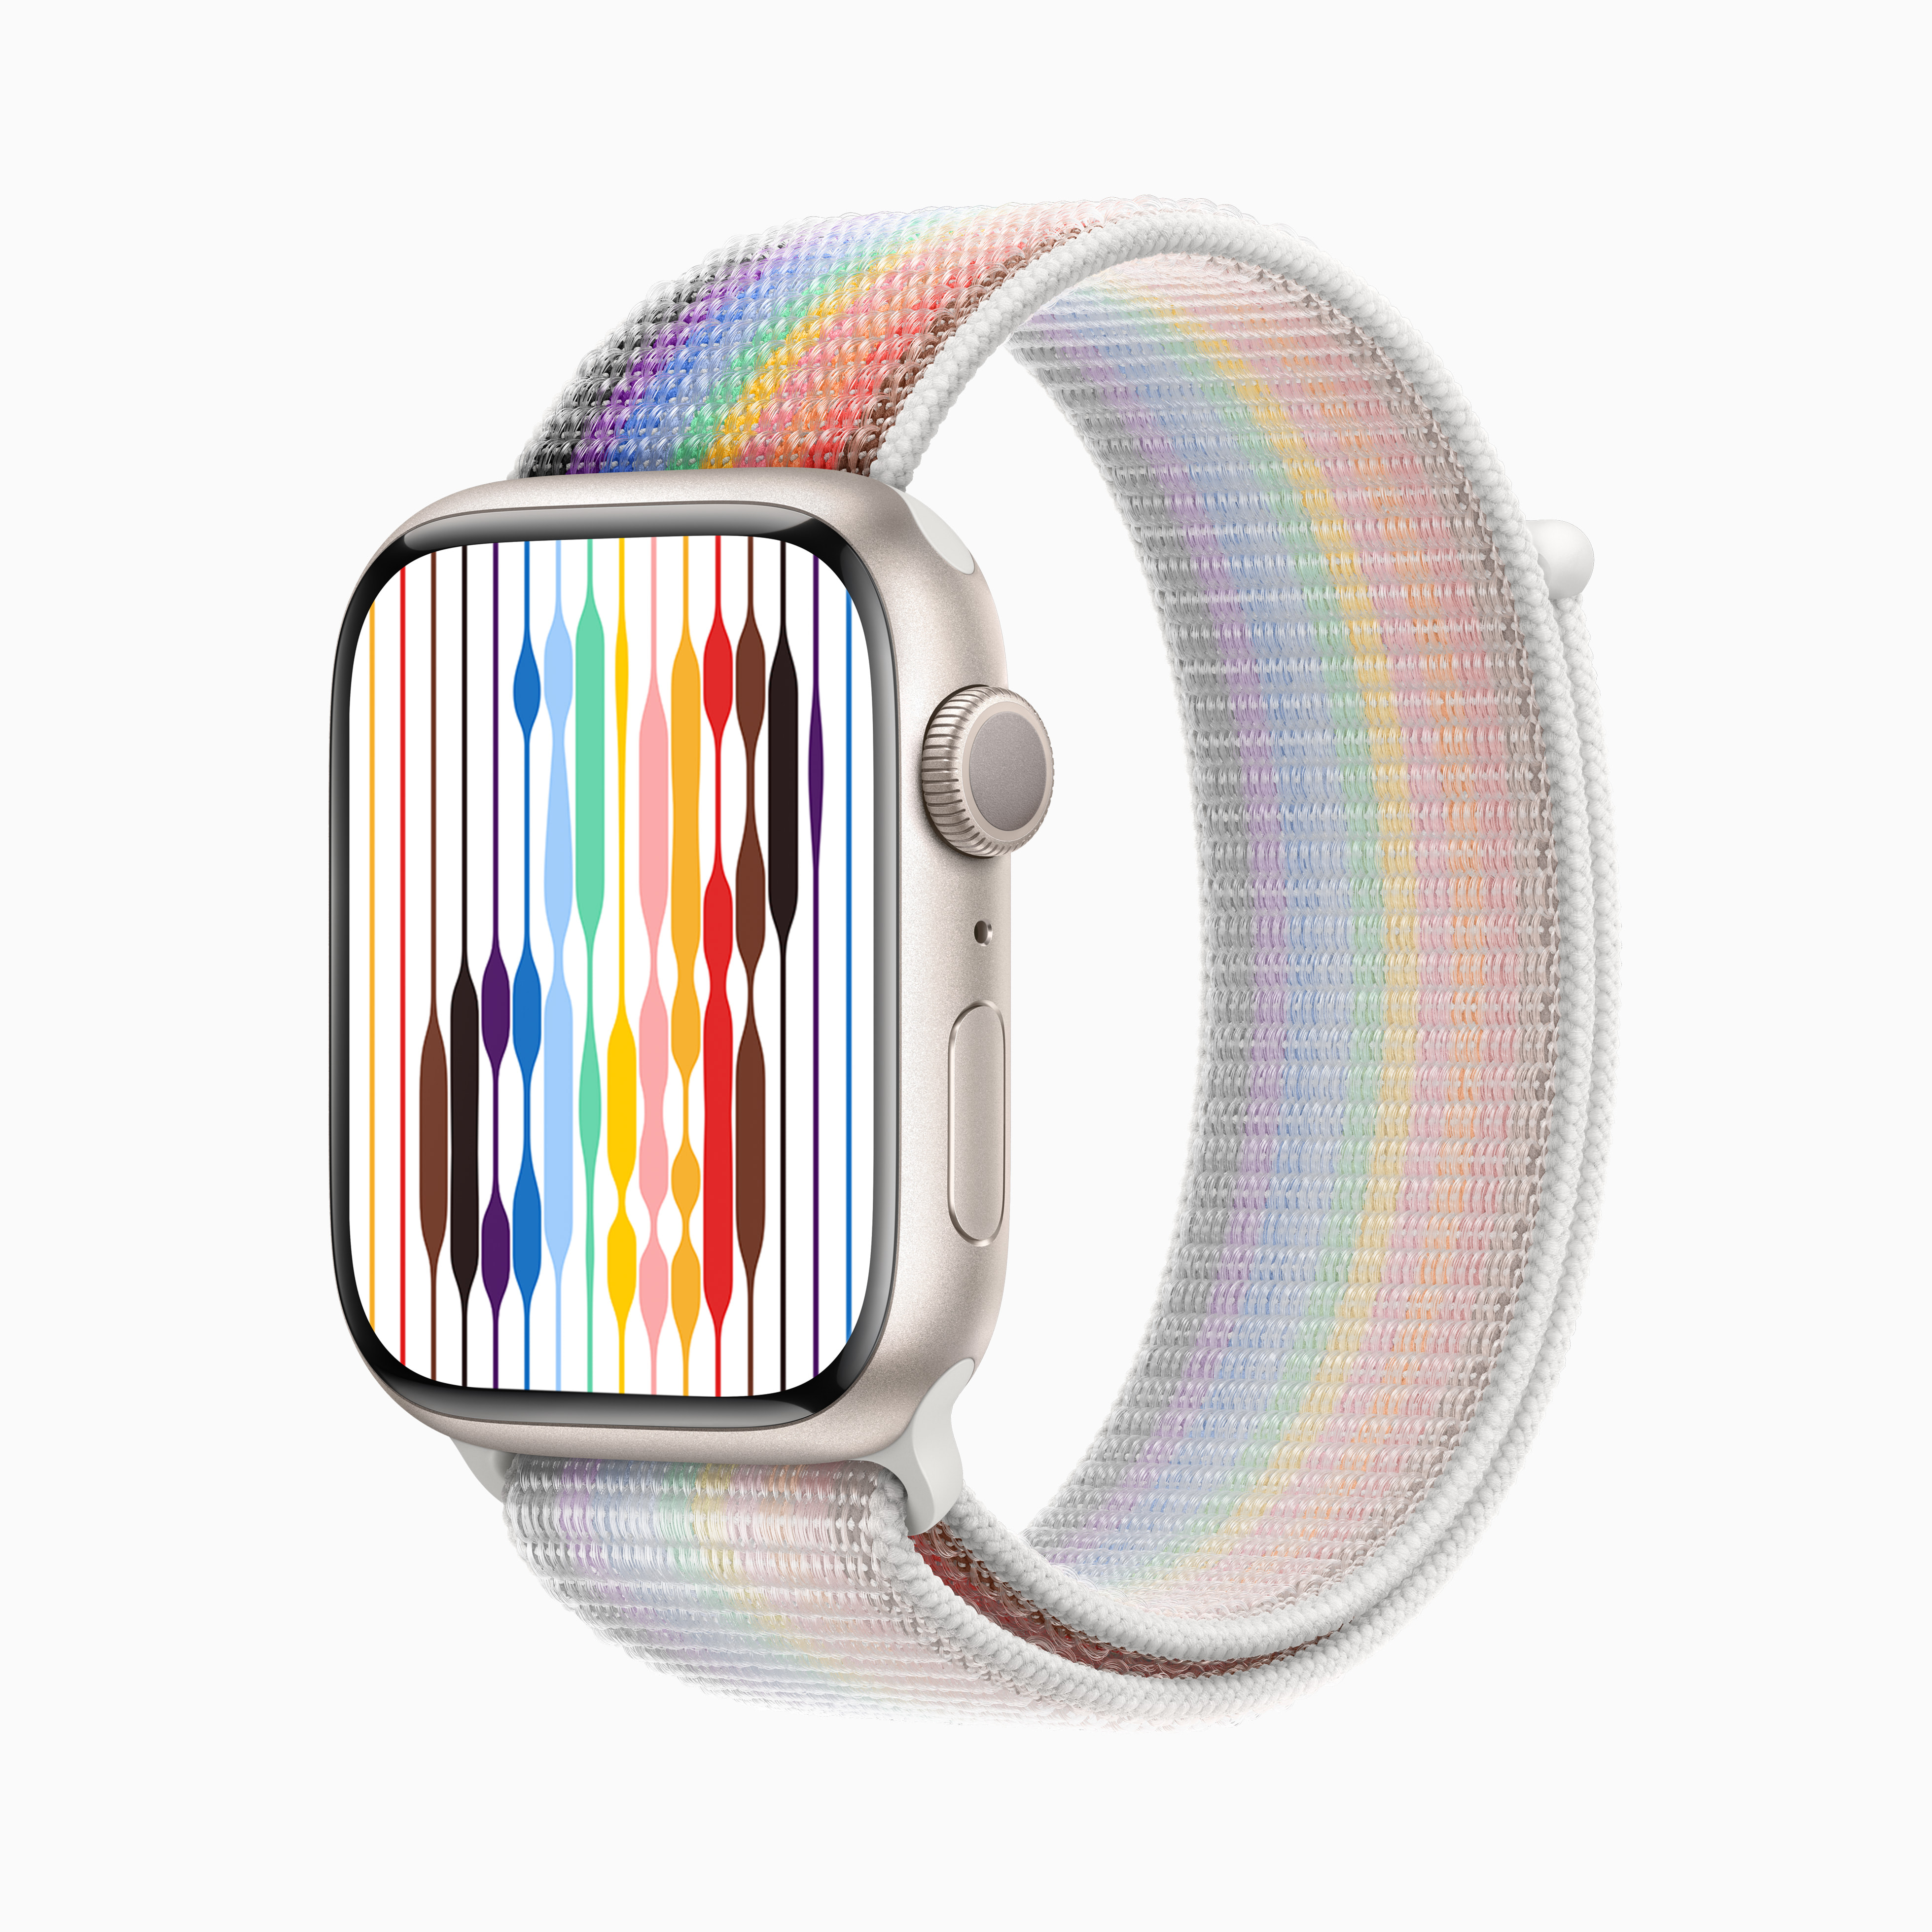 Apple 新しいapple Watchプライドエディションのバンドを発表 Apple 日本